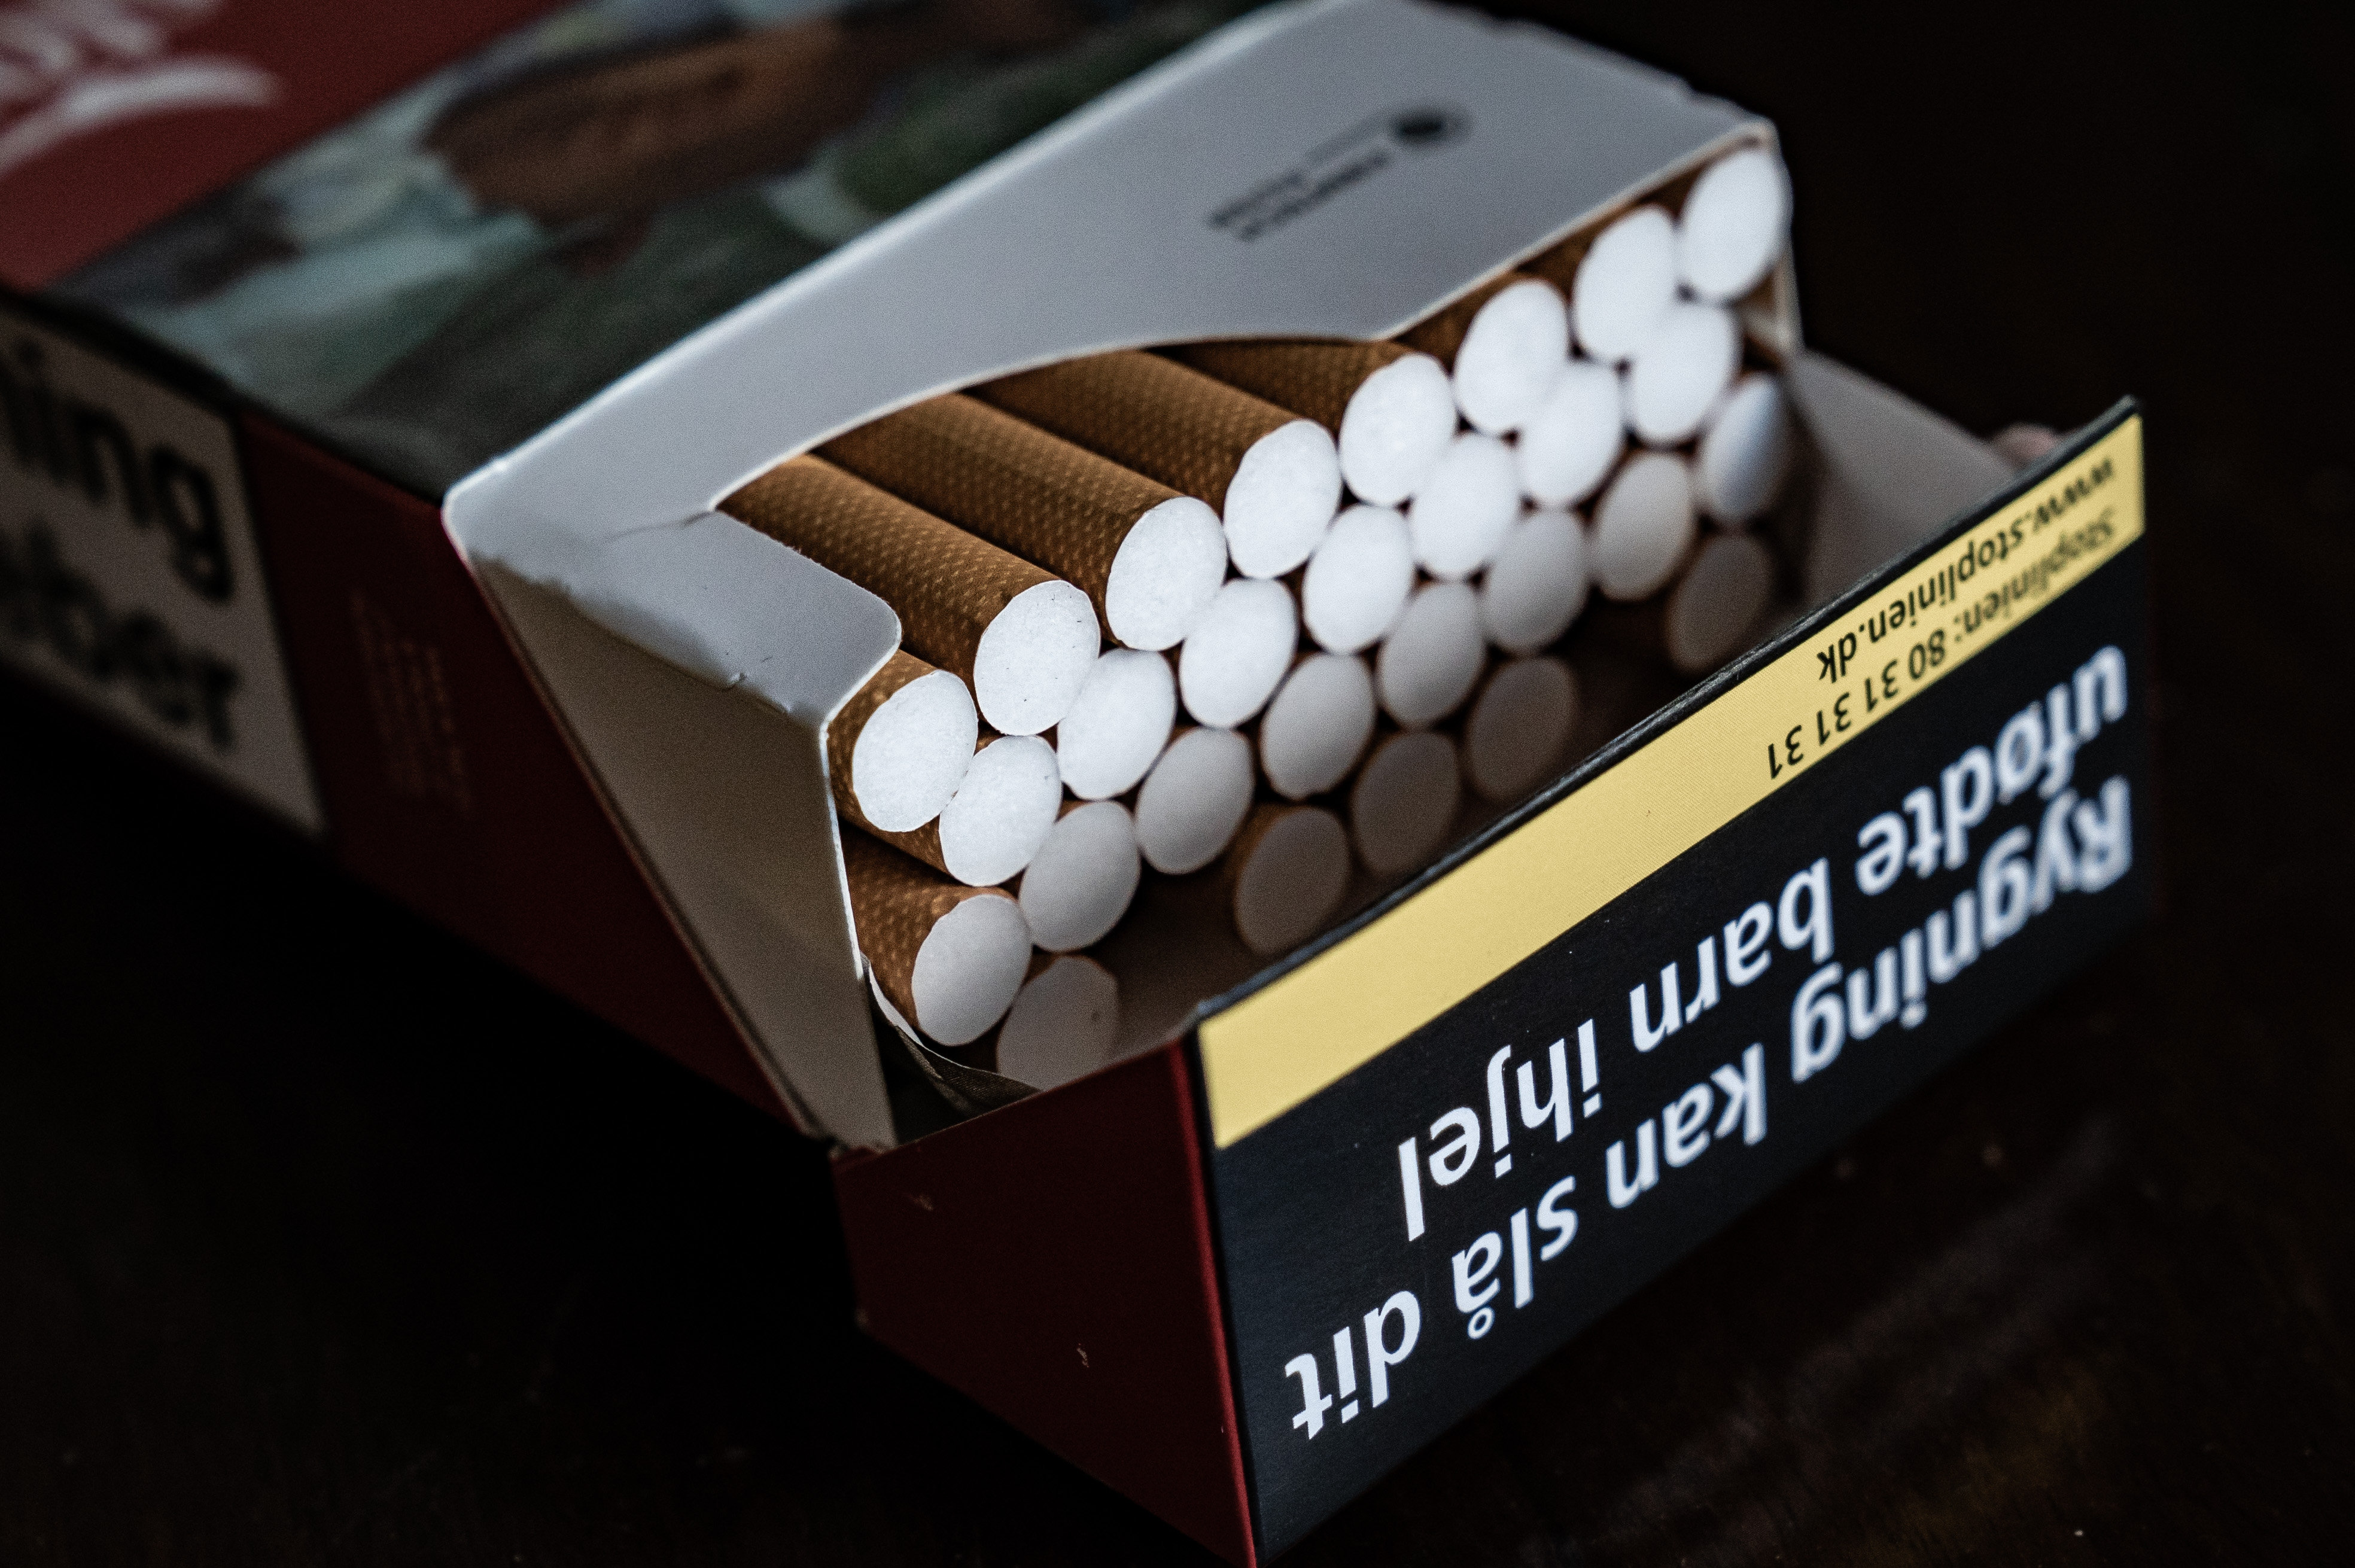 Højere afgift laveste af cigaretter i 62 år